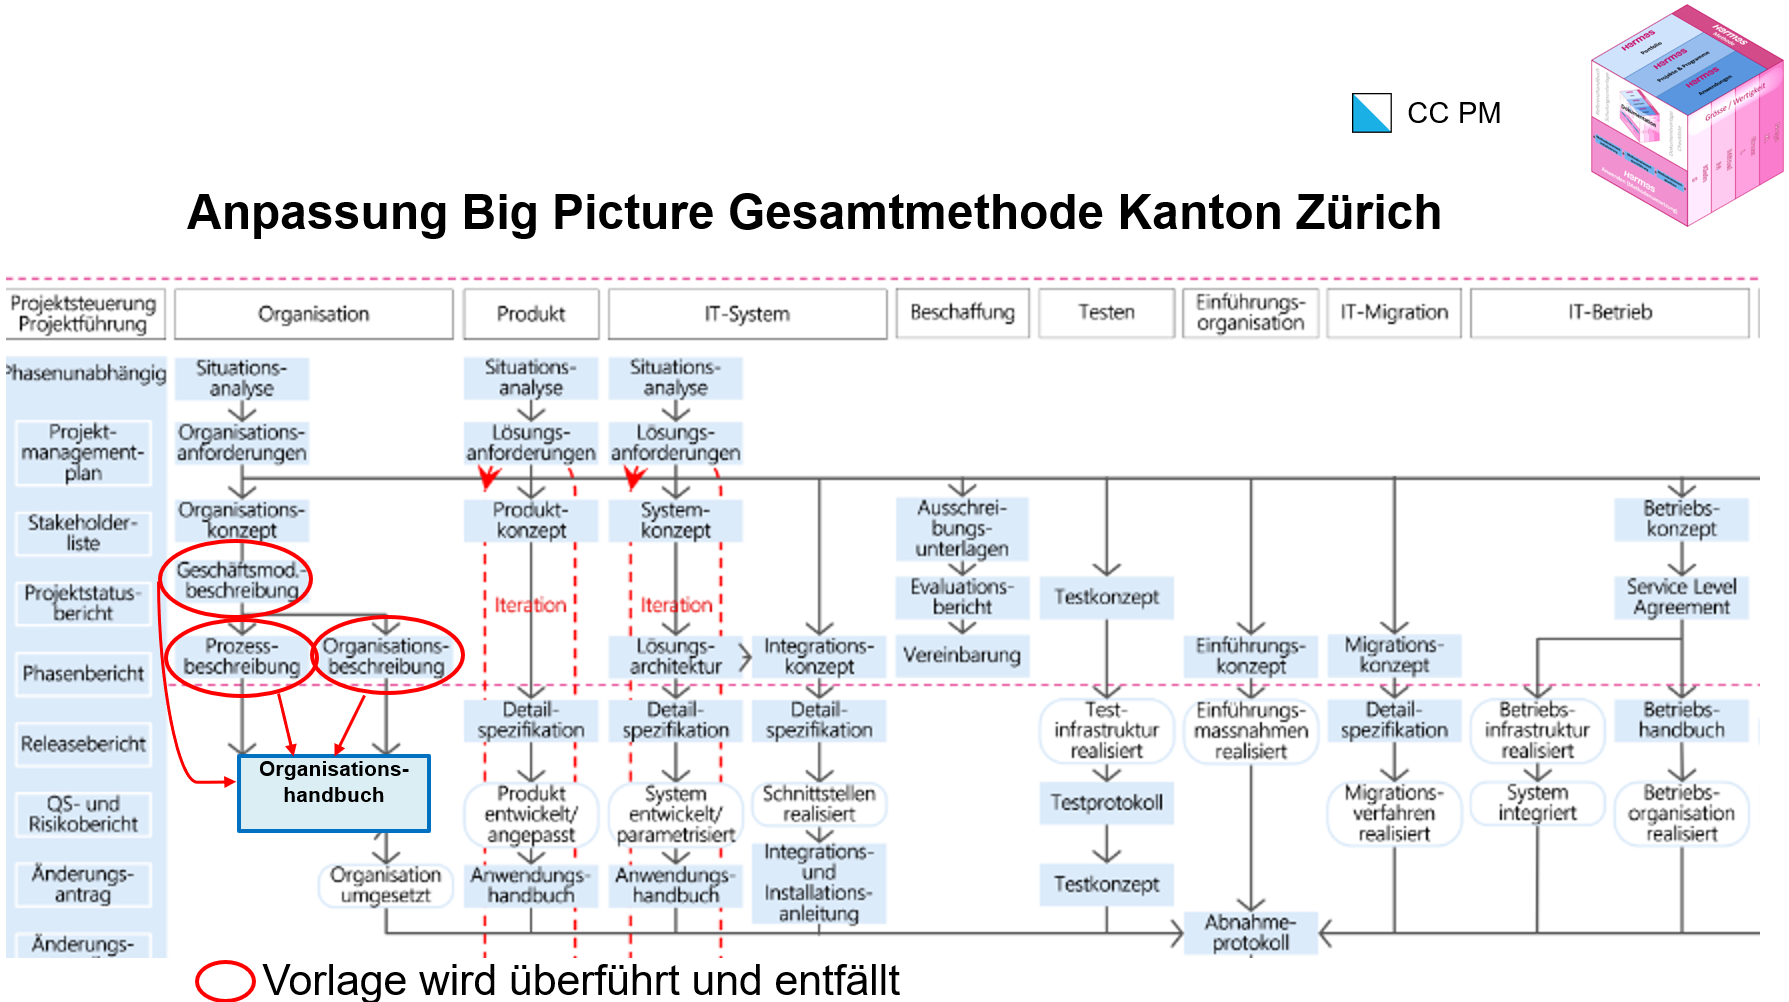 Abbildung: Anpassung Big Picture Gesamtmethode Kanton Zürich